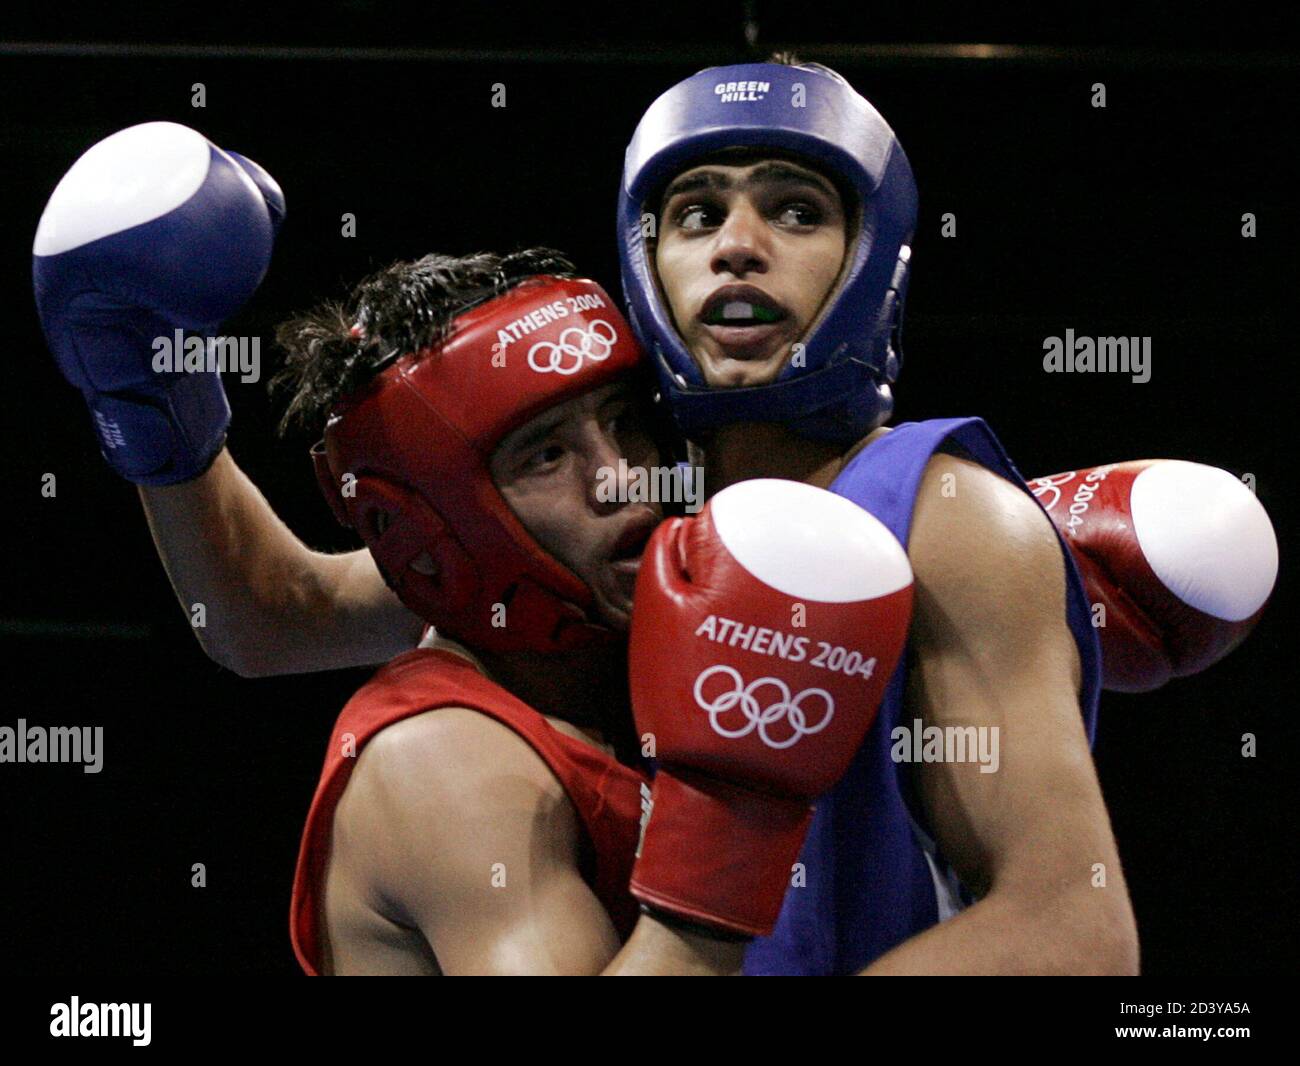 Großbritanniens Amir Khan (R) kämpft gegen Kasachstan Serik Yeleuov während die Männer Leichtgewicht (60 kg) Halbfinale Boxkampf bei den Athen 2004 Olympischen Sommerspielen, 27. August 2004. Khan hat das Spiel gewonnen. Stockfoto